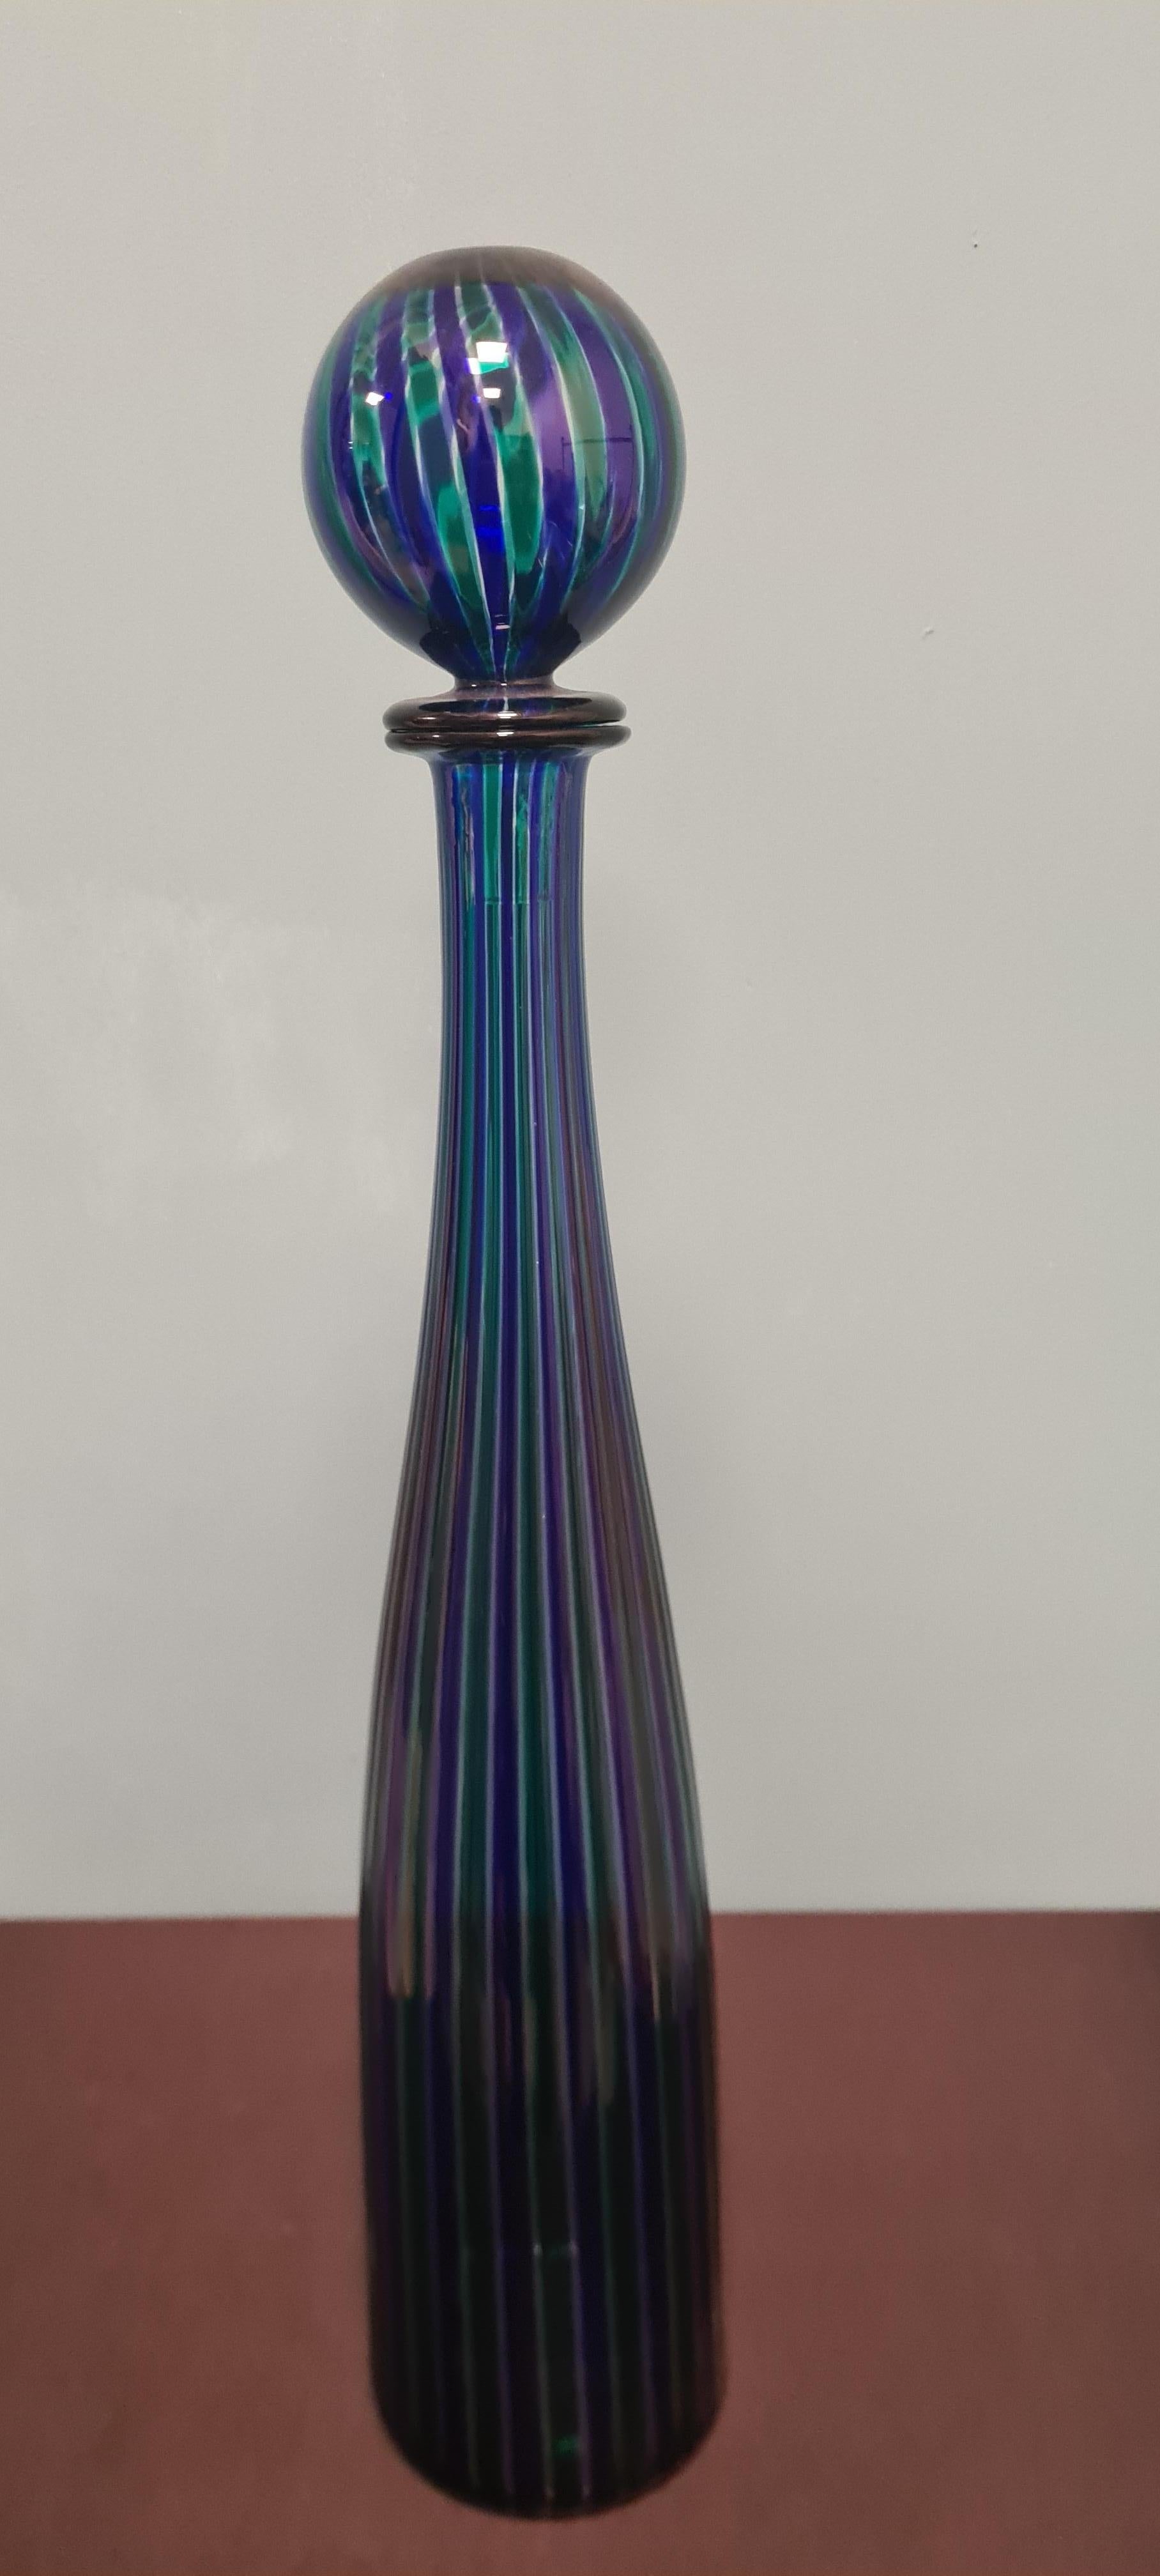 Die Venini-Flaschen der Serie Morandiane sind von den Gemälden des Malers Giorgio Morandi inspiriert, der die Flaschen zu einem unverwechselbaren Bild seiner Werke machte.

Die Serie Bottiglie Morandiane wurde 1956 von Paolo Venini konzipiert und